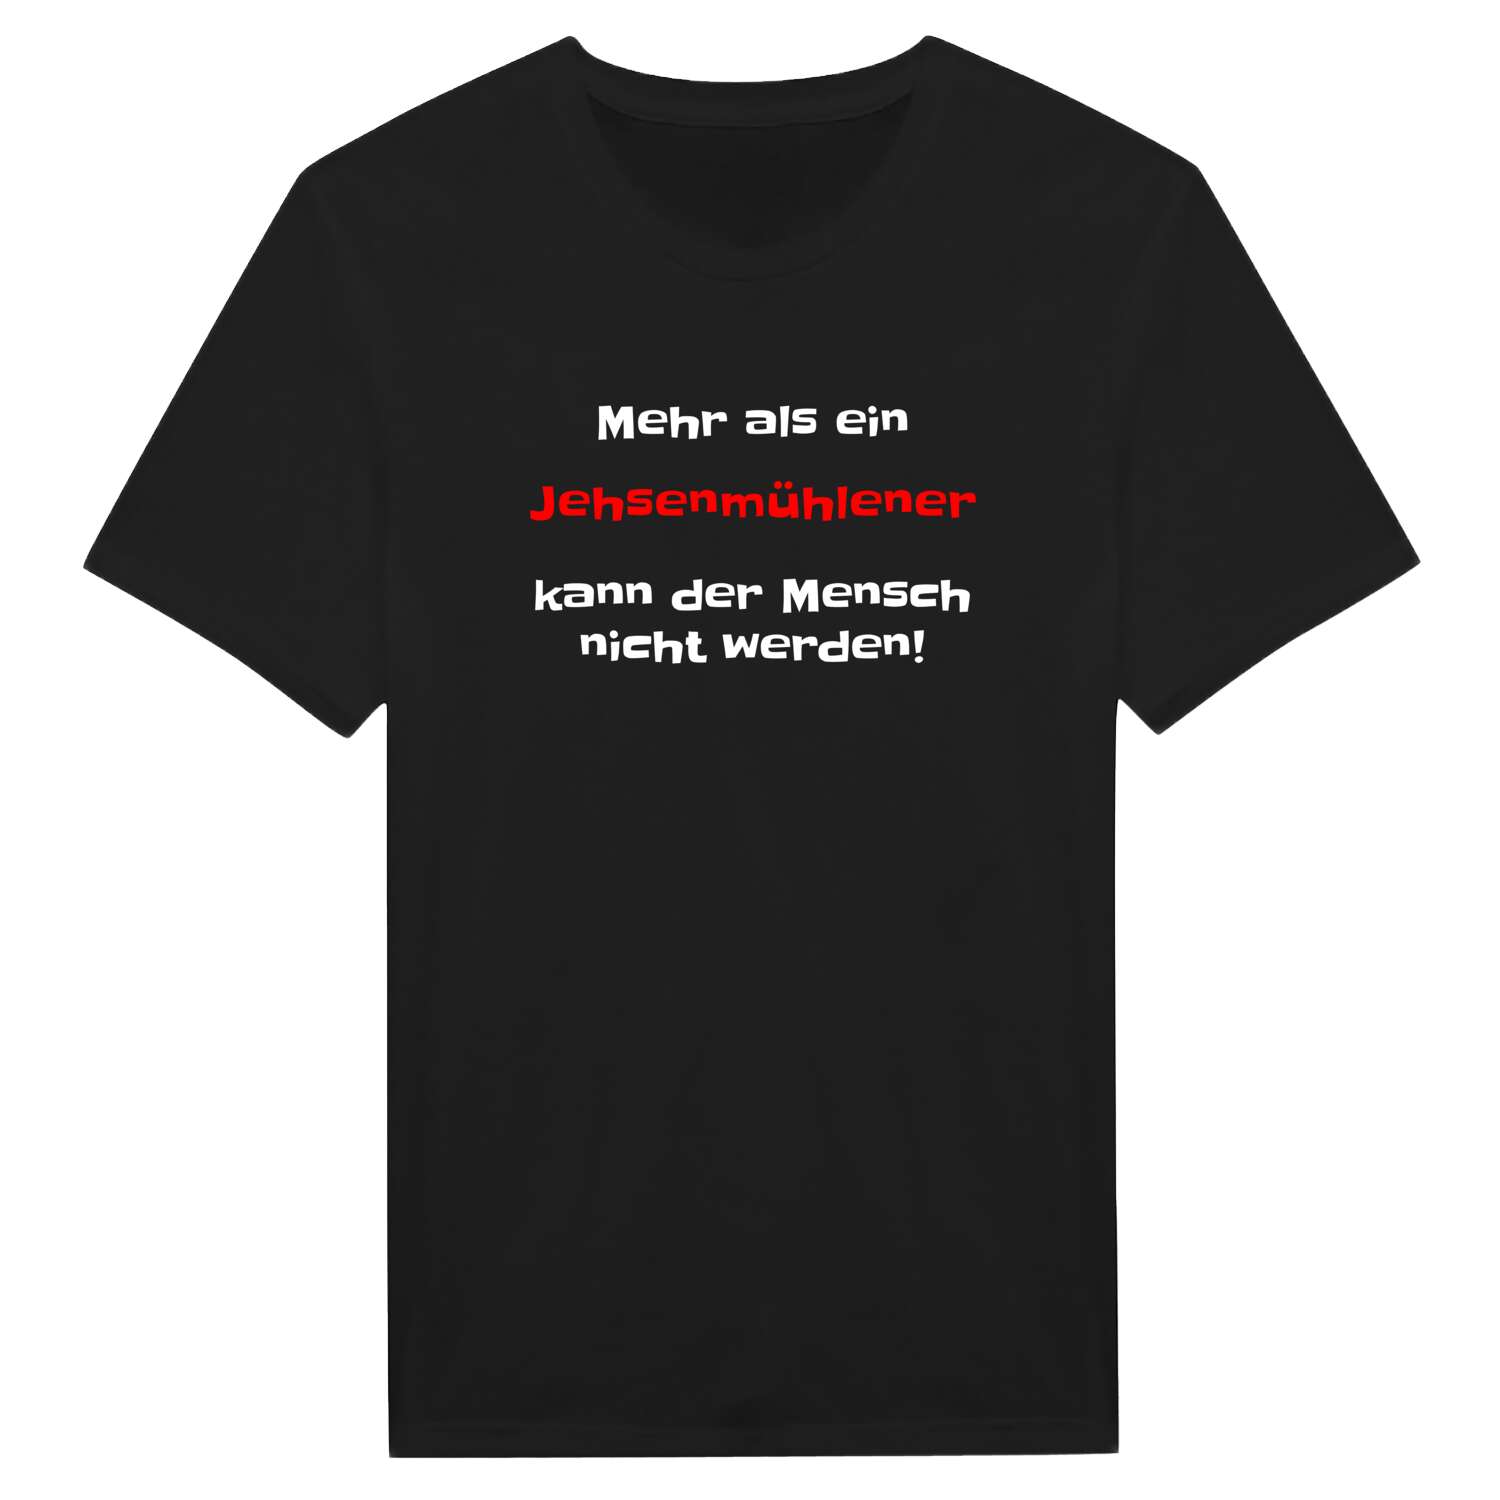 Jehsenmühle T-Shirt »Mehr als ein«